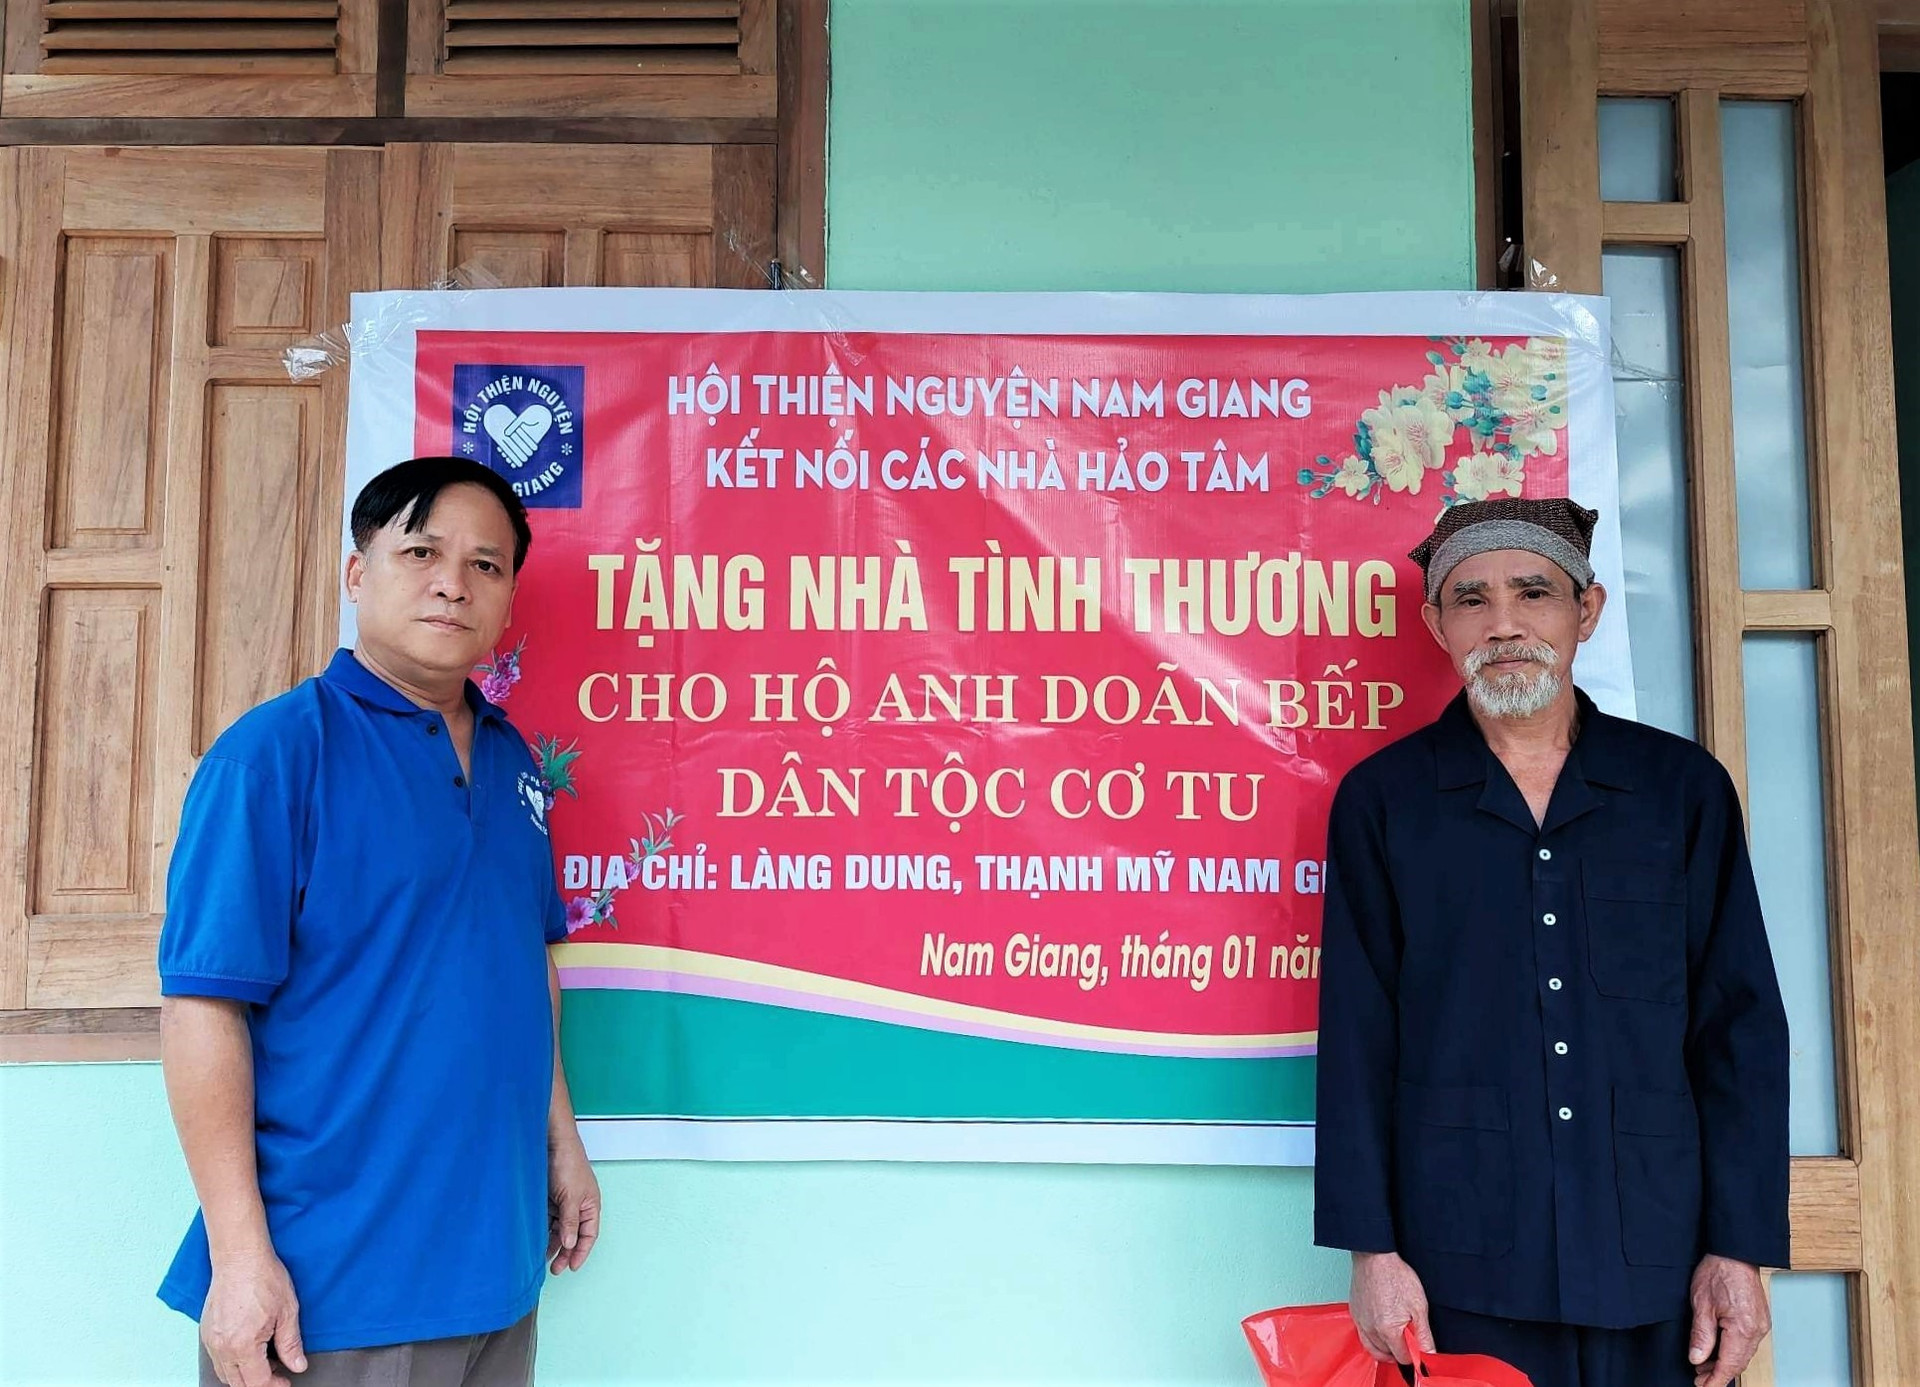 Đại diện Hội Thiện nguyện Nam Giang (bên trái) trao nhà tình thương cho hộ ông Doãn Bếp vào chiều 20/1 (tức 29 tháng Chạp). Ảnh: Đ.N